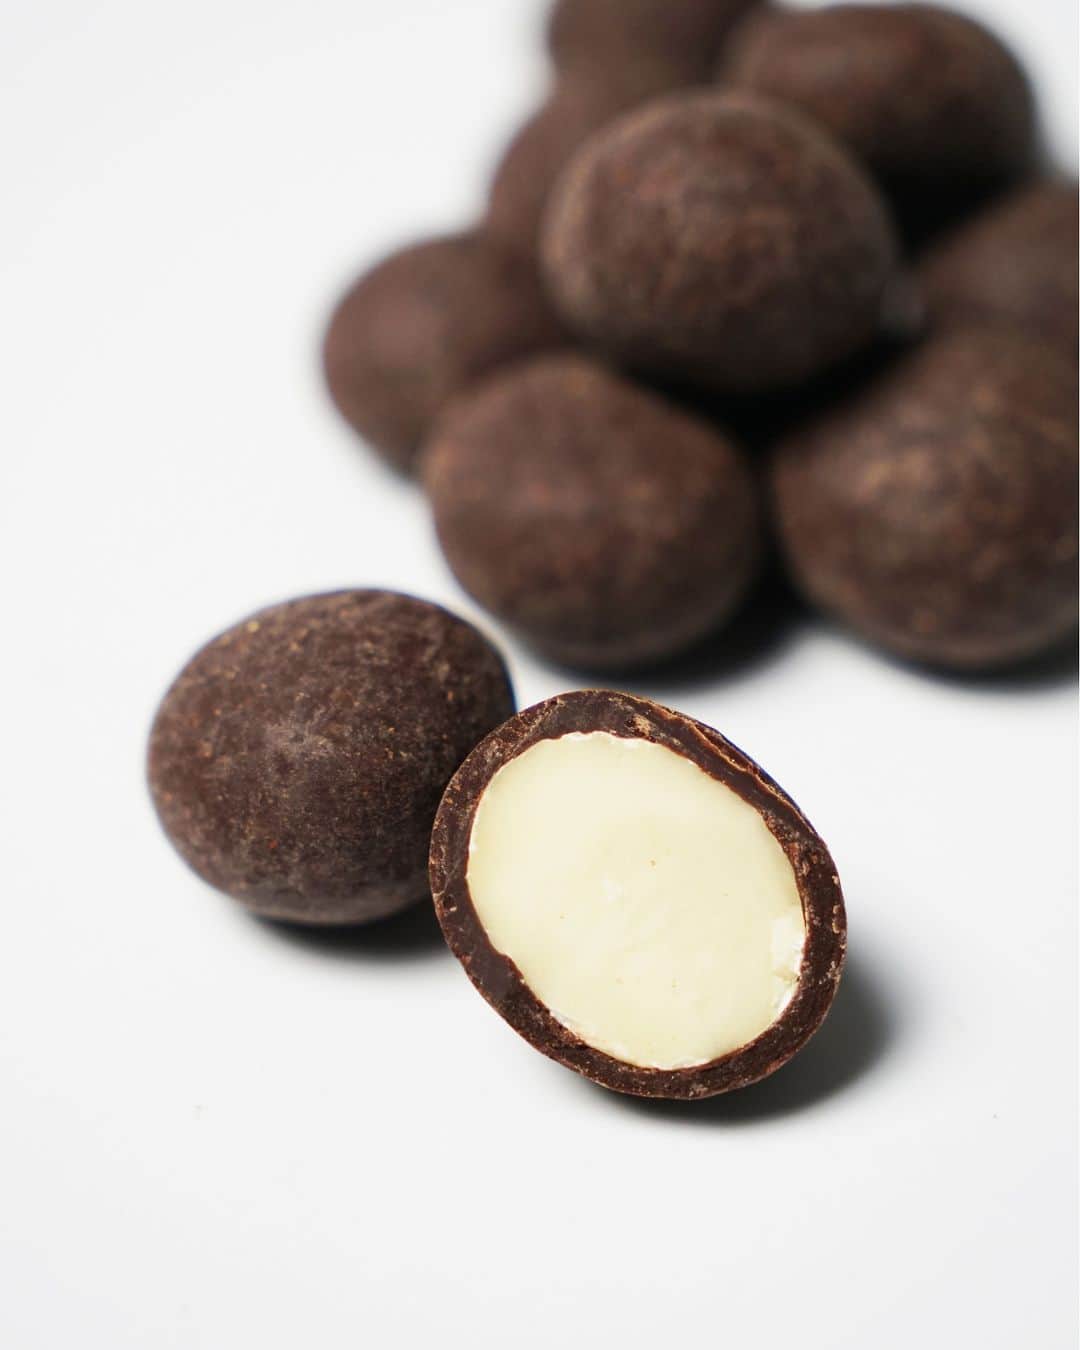 ダンデライオン・チョコレート・ジャパンのインスタグラム：「本日より「マカダミアナッツチョコレート」の販売を開始しました！  ルワンダ産のオーガニックマカダミアナッツを、ホンジュラス産カカオ70%のチョコレートでコーティングしました。チョコレートとナッツの濃厚な甘みが口の中で広がります。  マカダミアナッツというとハワイやオーストラリア産のものが有名ですが、今回はアフリカ大陸の中心に位置する小さな国、ルワンダ産のものを使用。 「千の丘の国」 と呼ばれる美しい丘陵地で育てられたマカダミアナッツは、濃厚な甘みとサクッとした食感が特徴です。  ワインと一緒に、または疲れたときの気分転換にいかがでしょうか。  詳細・ご購入はプロフィールリンクから @dandelion_chocolate_japan  ======  ▶︎マカダミアナッツチョコレート 価格：2,800円（税込） 販売店舗：オンラインストア、ファクトリー＆カフェ蔵前、伊勢外宮店  ======  #dandelionchocolate #ダンデライオンチョコレート #beantobar #craftchocolate #クラフトチョコレート #chocolate #チョコレート #cacao #カカオ #高カカオチョコレート #マカダミアナッツチョコレート #マカダミアナッツ #ナッツ好き #ワイン好き #ルワンダ #おやつの時間 #ギフトにおすすめ #プレゼントにおすすめ #贈り物に最適  #お取り寄せ #お取り寄せスイーツ」